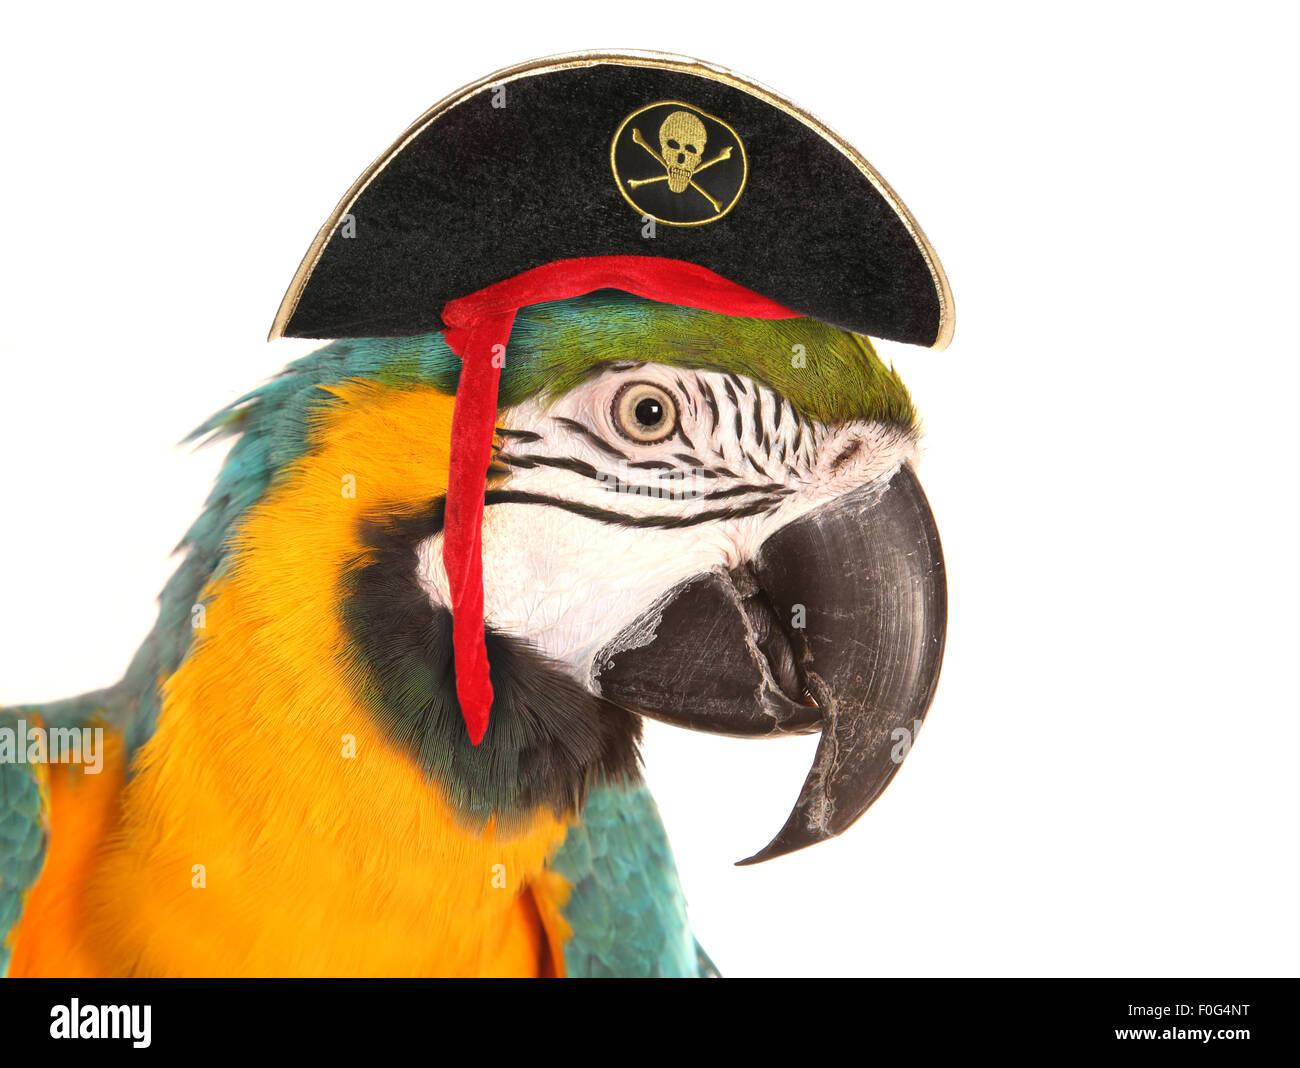 Macaw parrot découpe studio pirate Banque D'Images